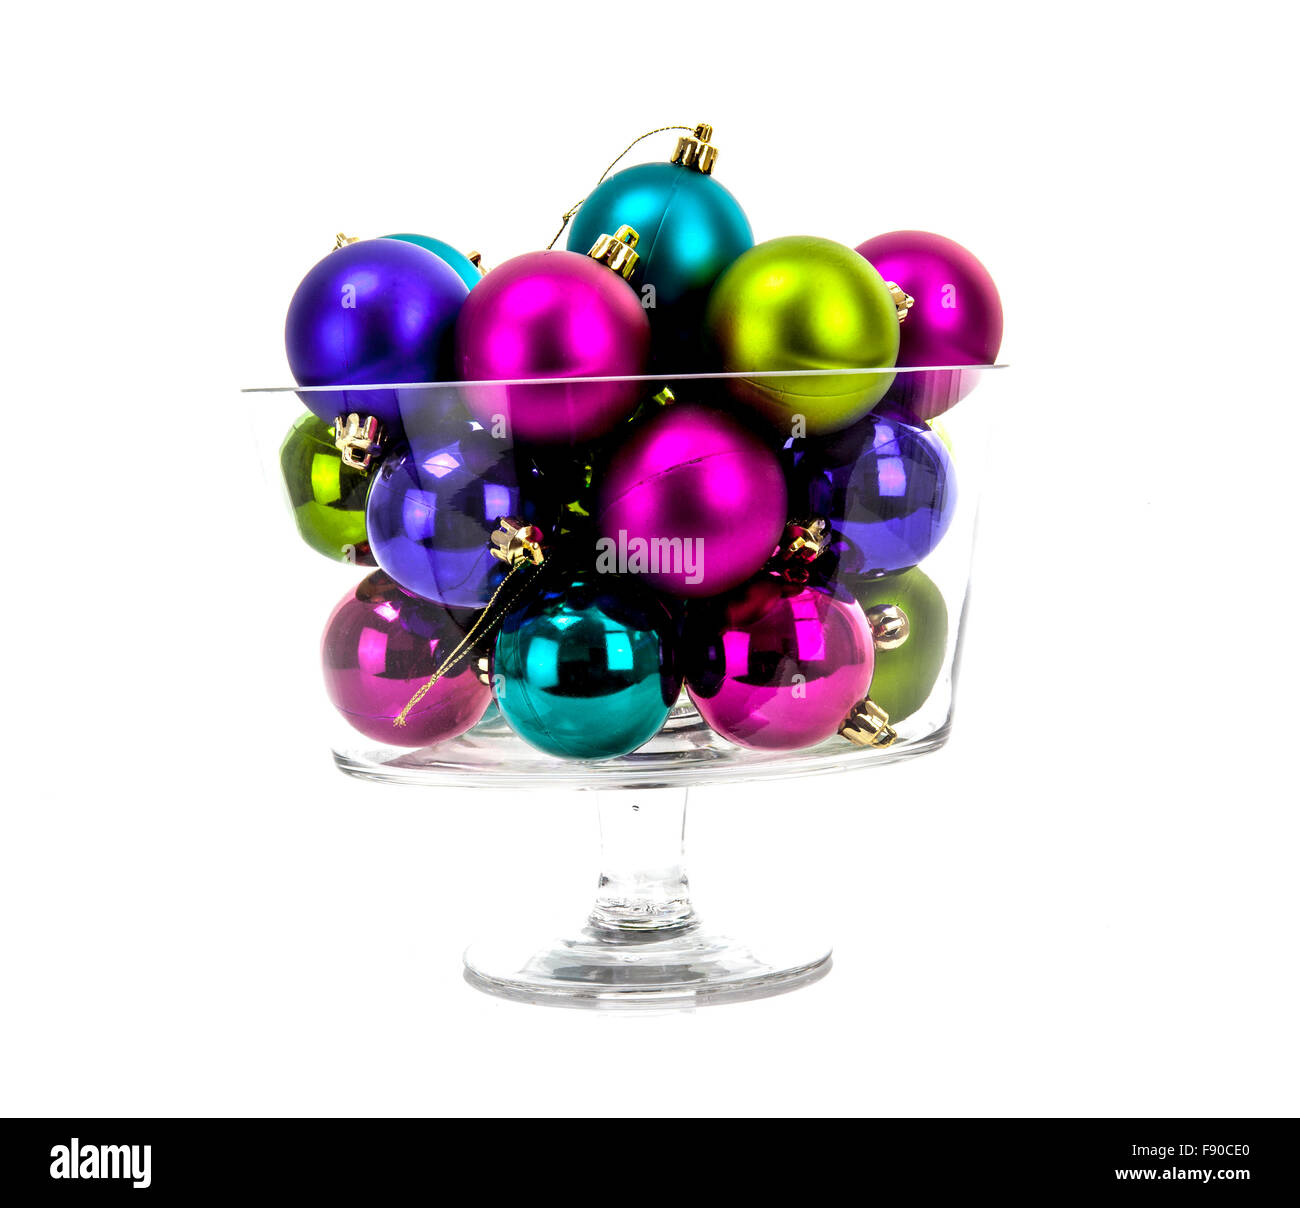 Boules de Noël multicolores dans un verre isolé sur fond blanc Banque D'Images